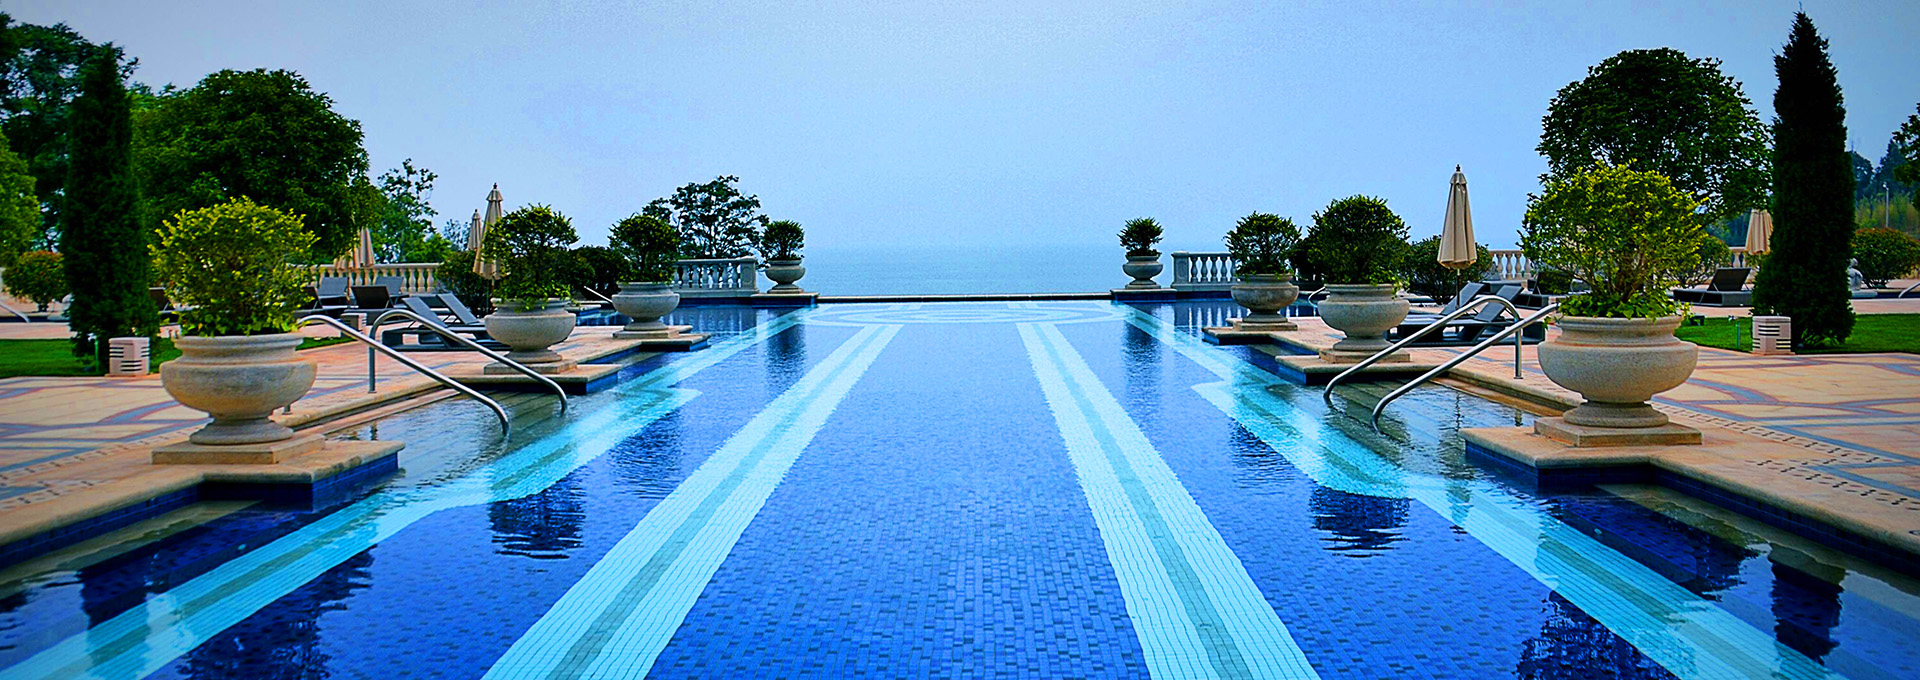 云南抚仙湖希尔顿酒店泳池设备工程项目